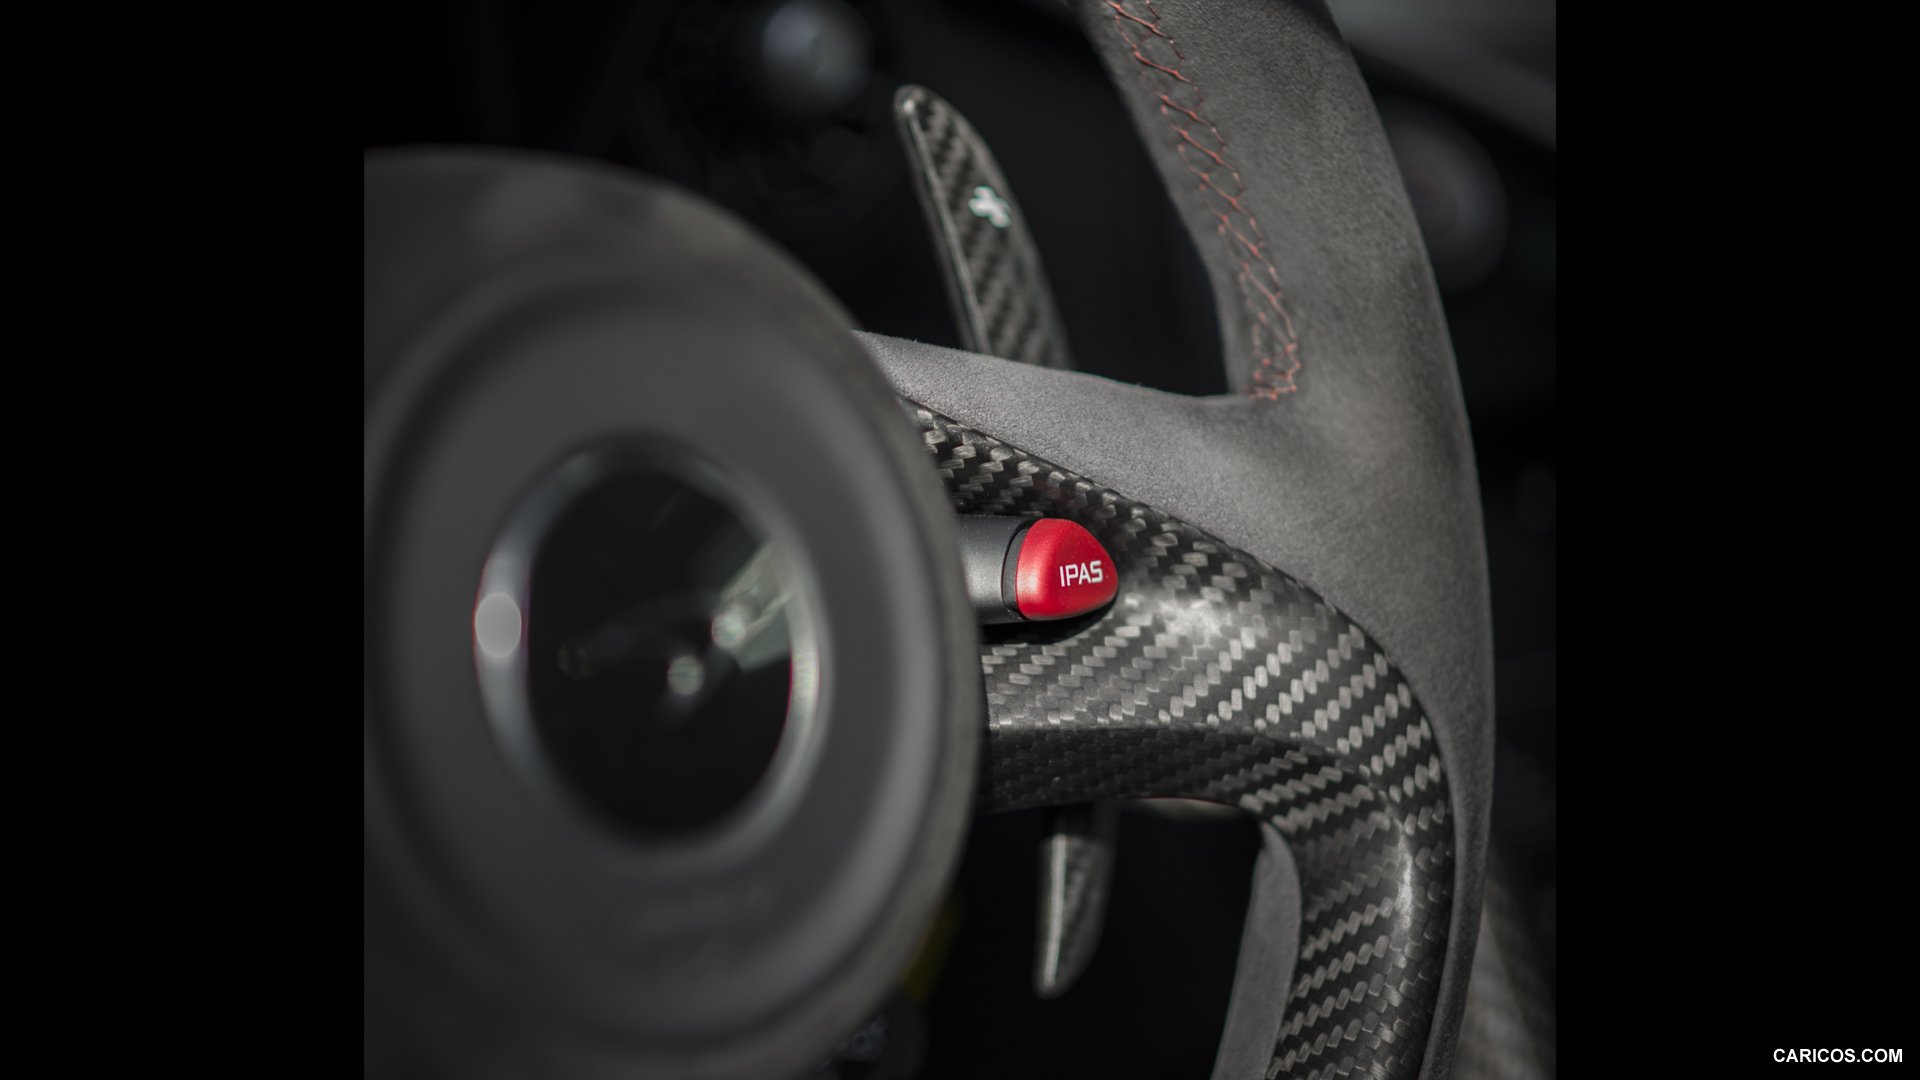 2014 McLaren P1  - Interior Detail, #108 of 126